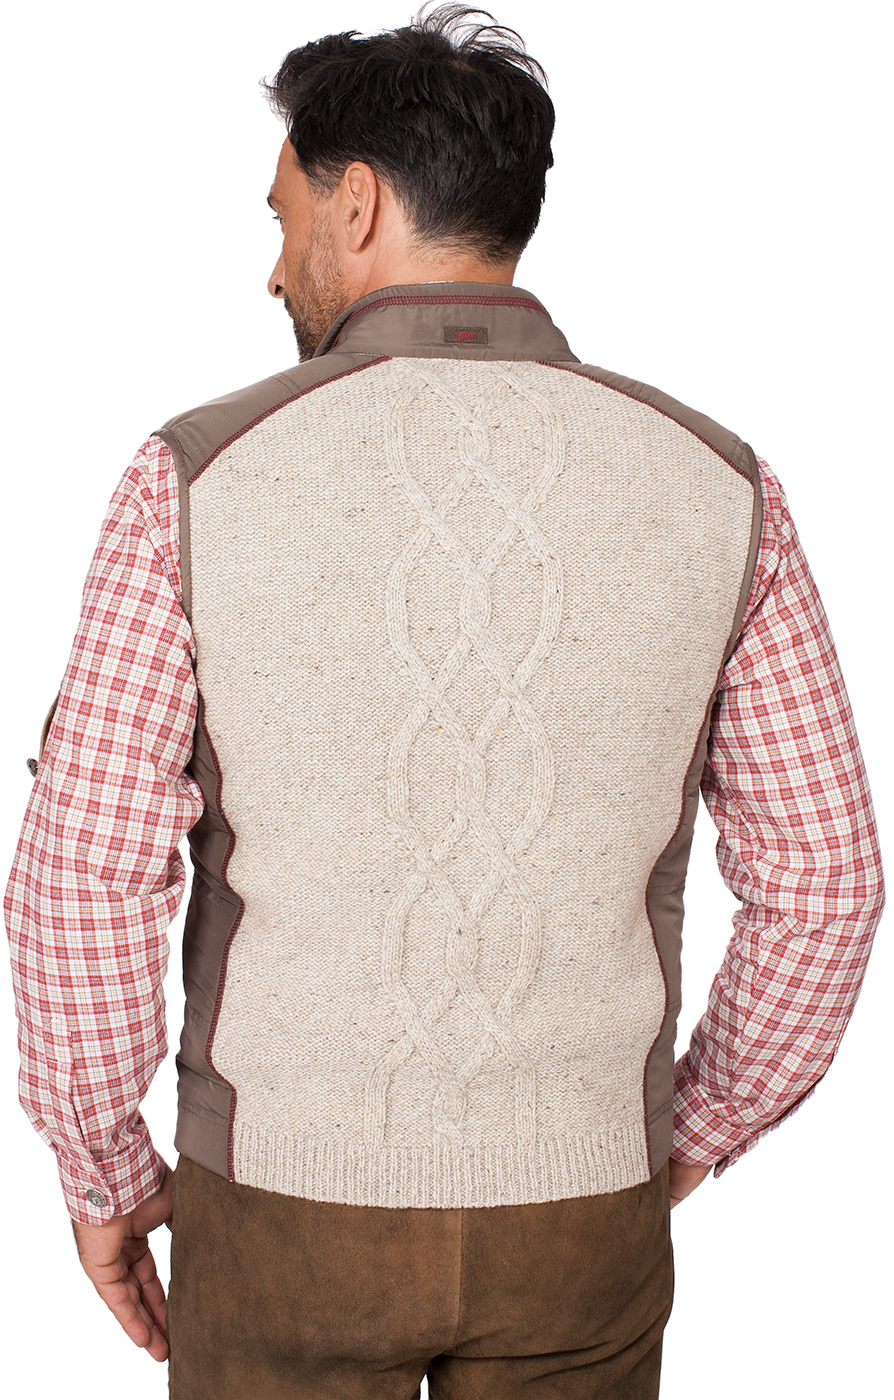 weitere Bilder von German knitted waistcoat Franko nature light brown